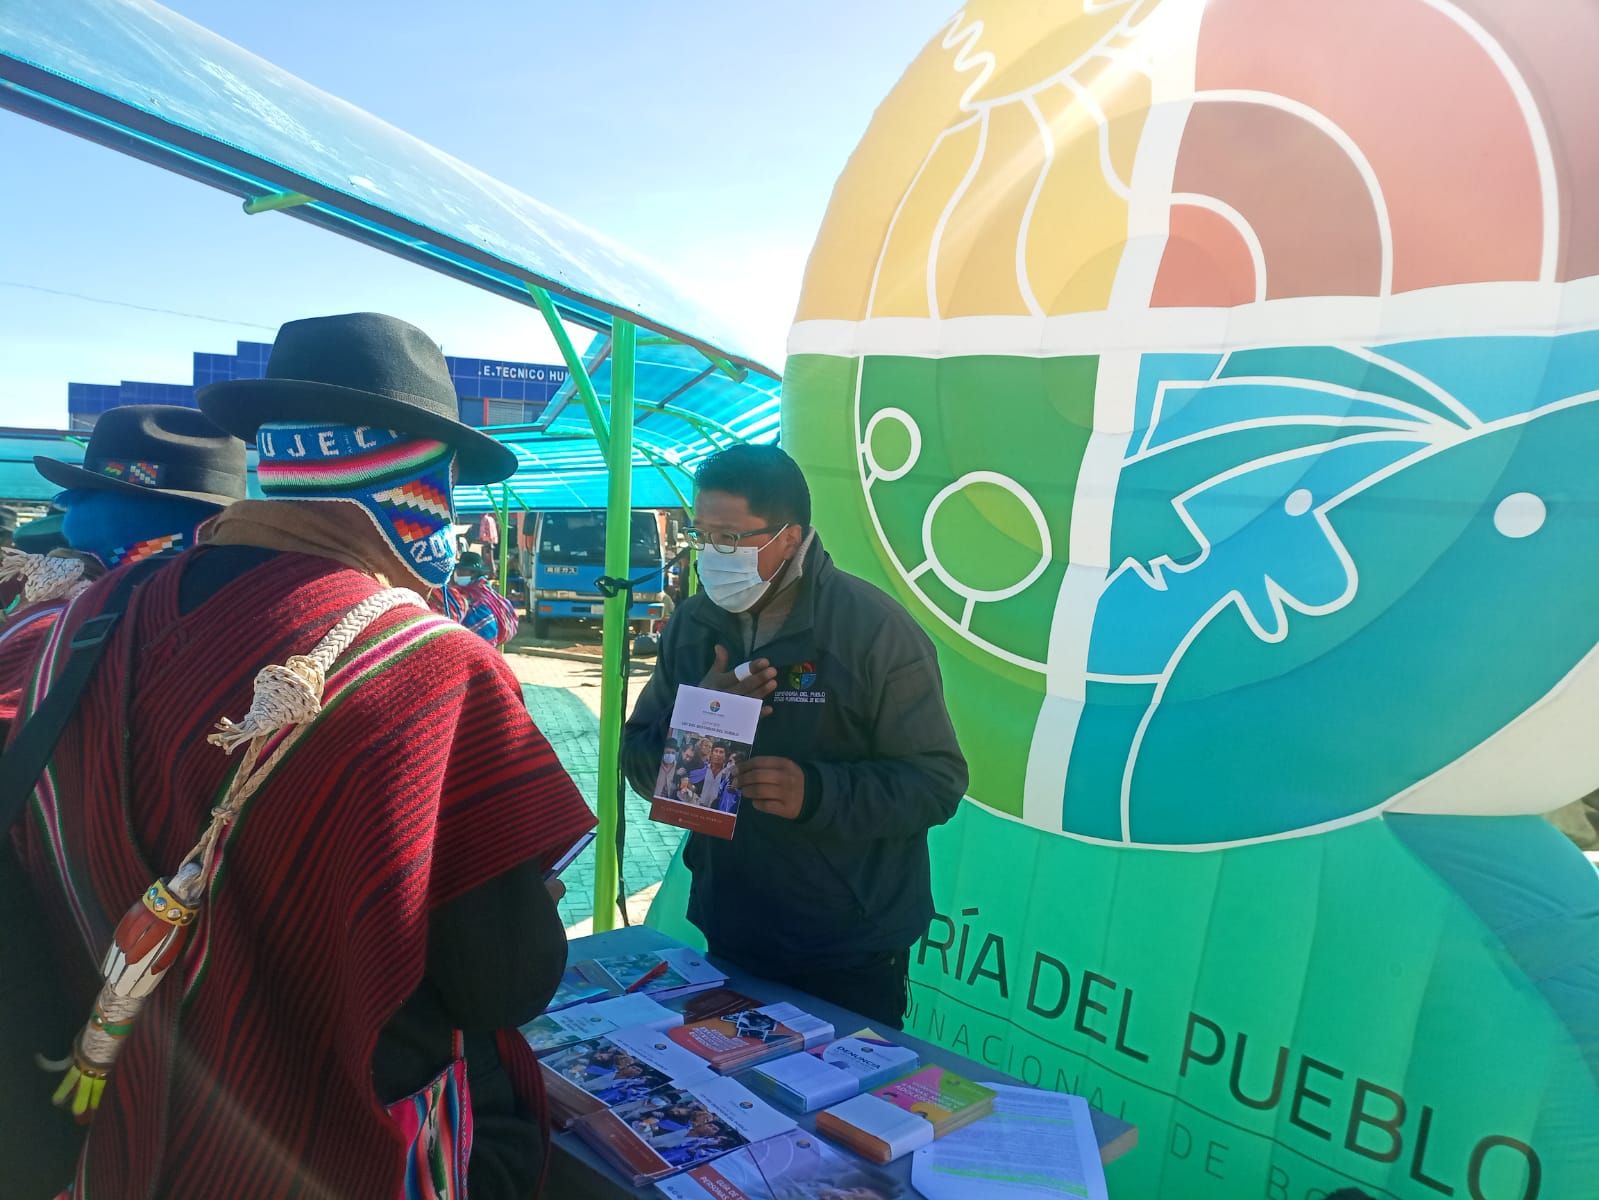 Coordinación Regional Desaguadero socializa la labor defensorial en feria de salud del municipio de Guaqui